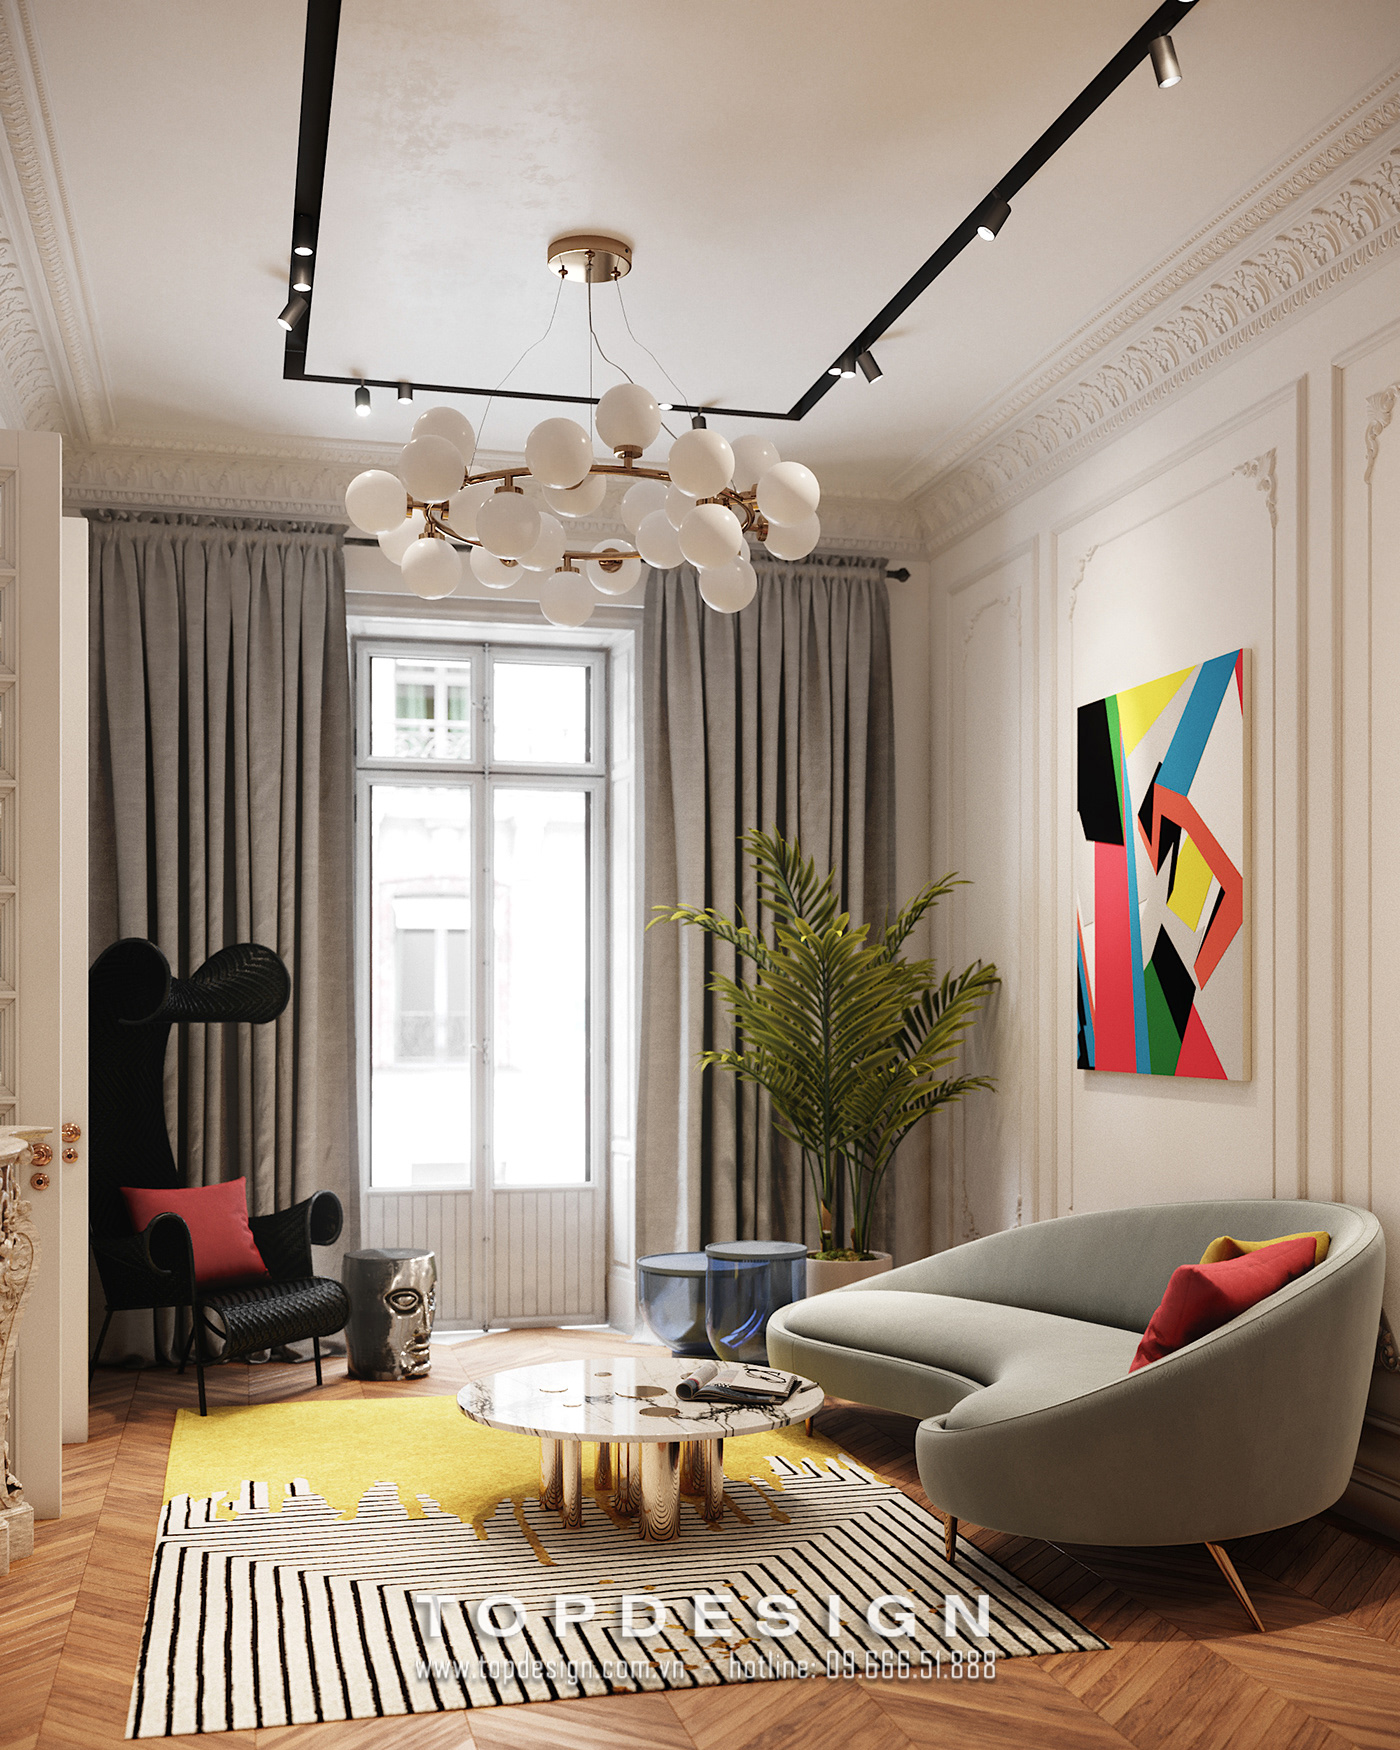 6.Thiết kế thi công nội thất căn hộ chung cư màu sắc ấn tượng, bắt mắt_TOPDESIGN